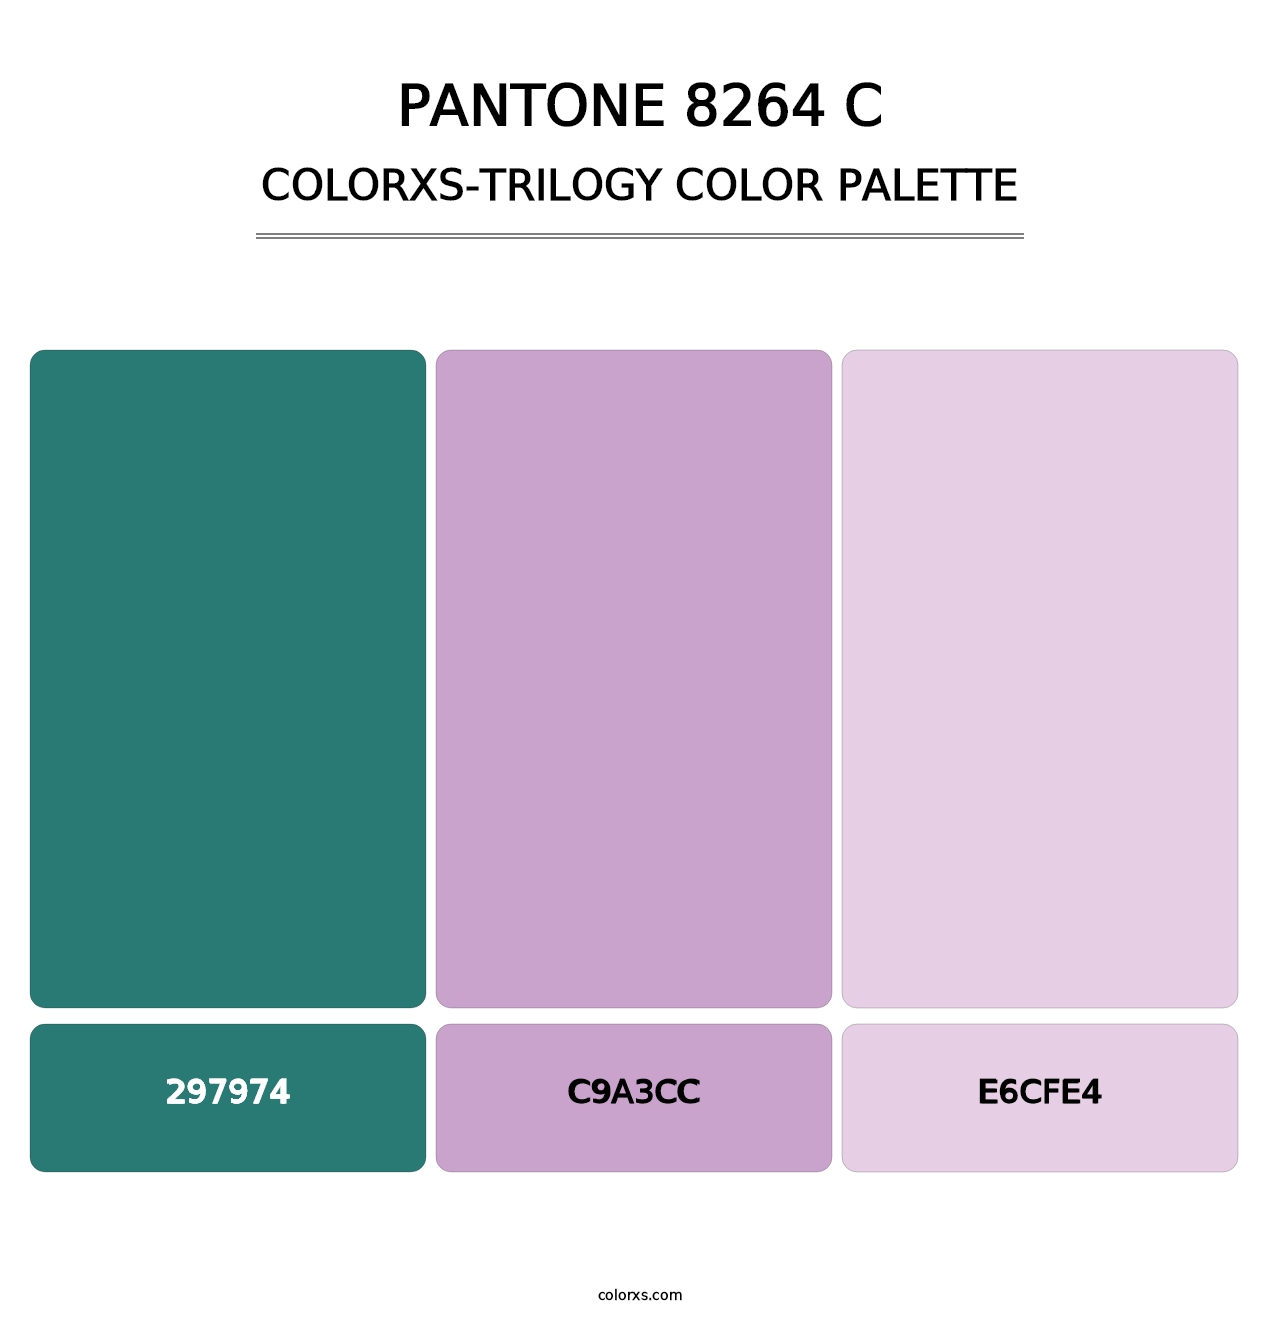 PANTONE 8264 C - Colorxs Trilogy Palette